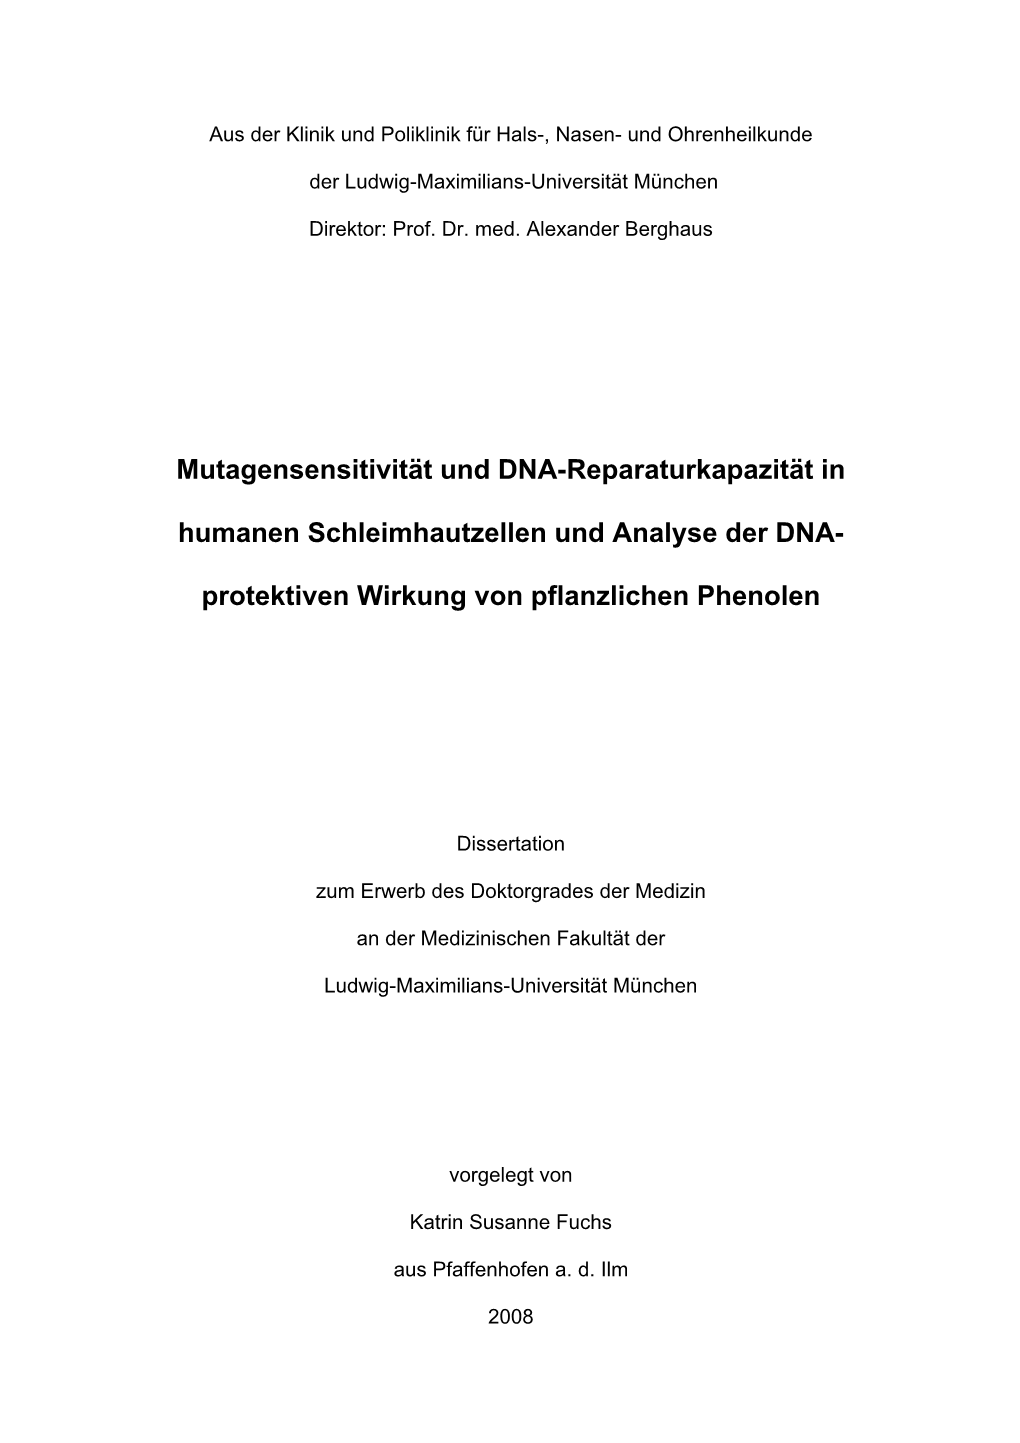 Mutagensensitivität Und DNA-Reparaturkapazität in Humanen Schleimhautzellen Und Analyse Der DNA